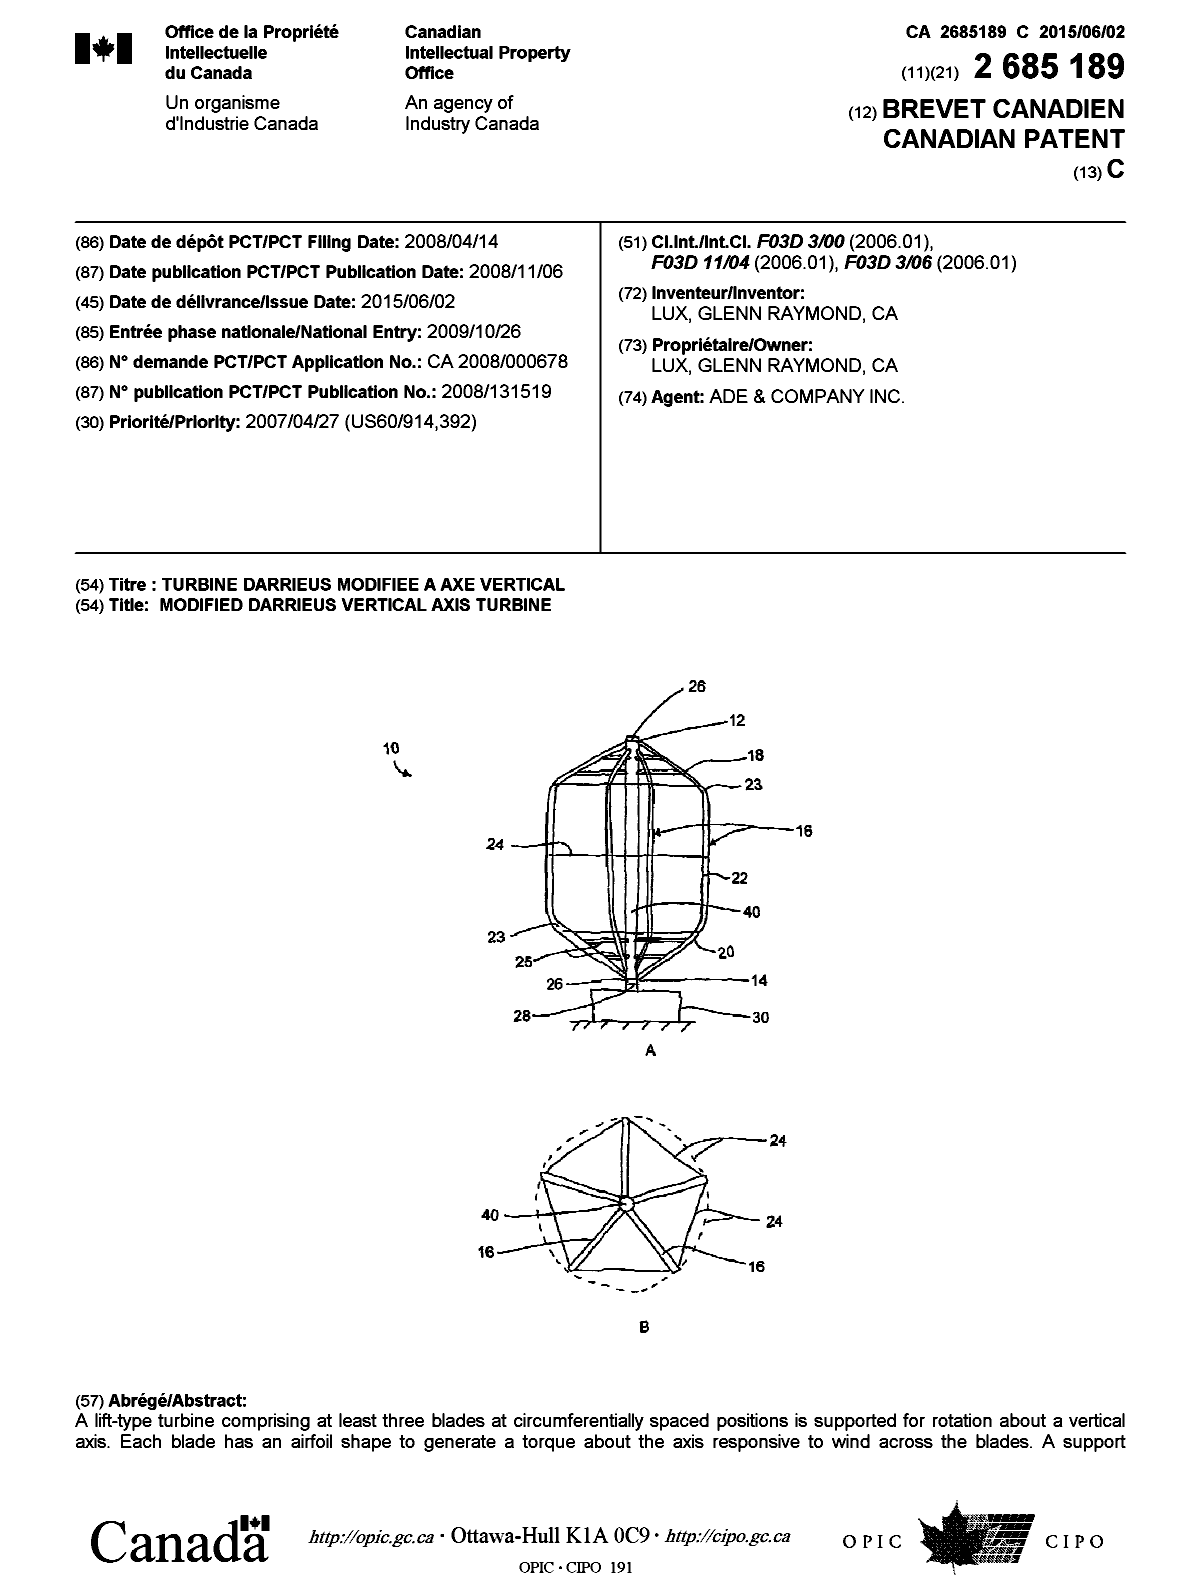 Document de brevet canadien 2685189. Page couverture 20141211. Image 1 de 2